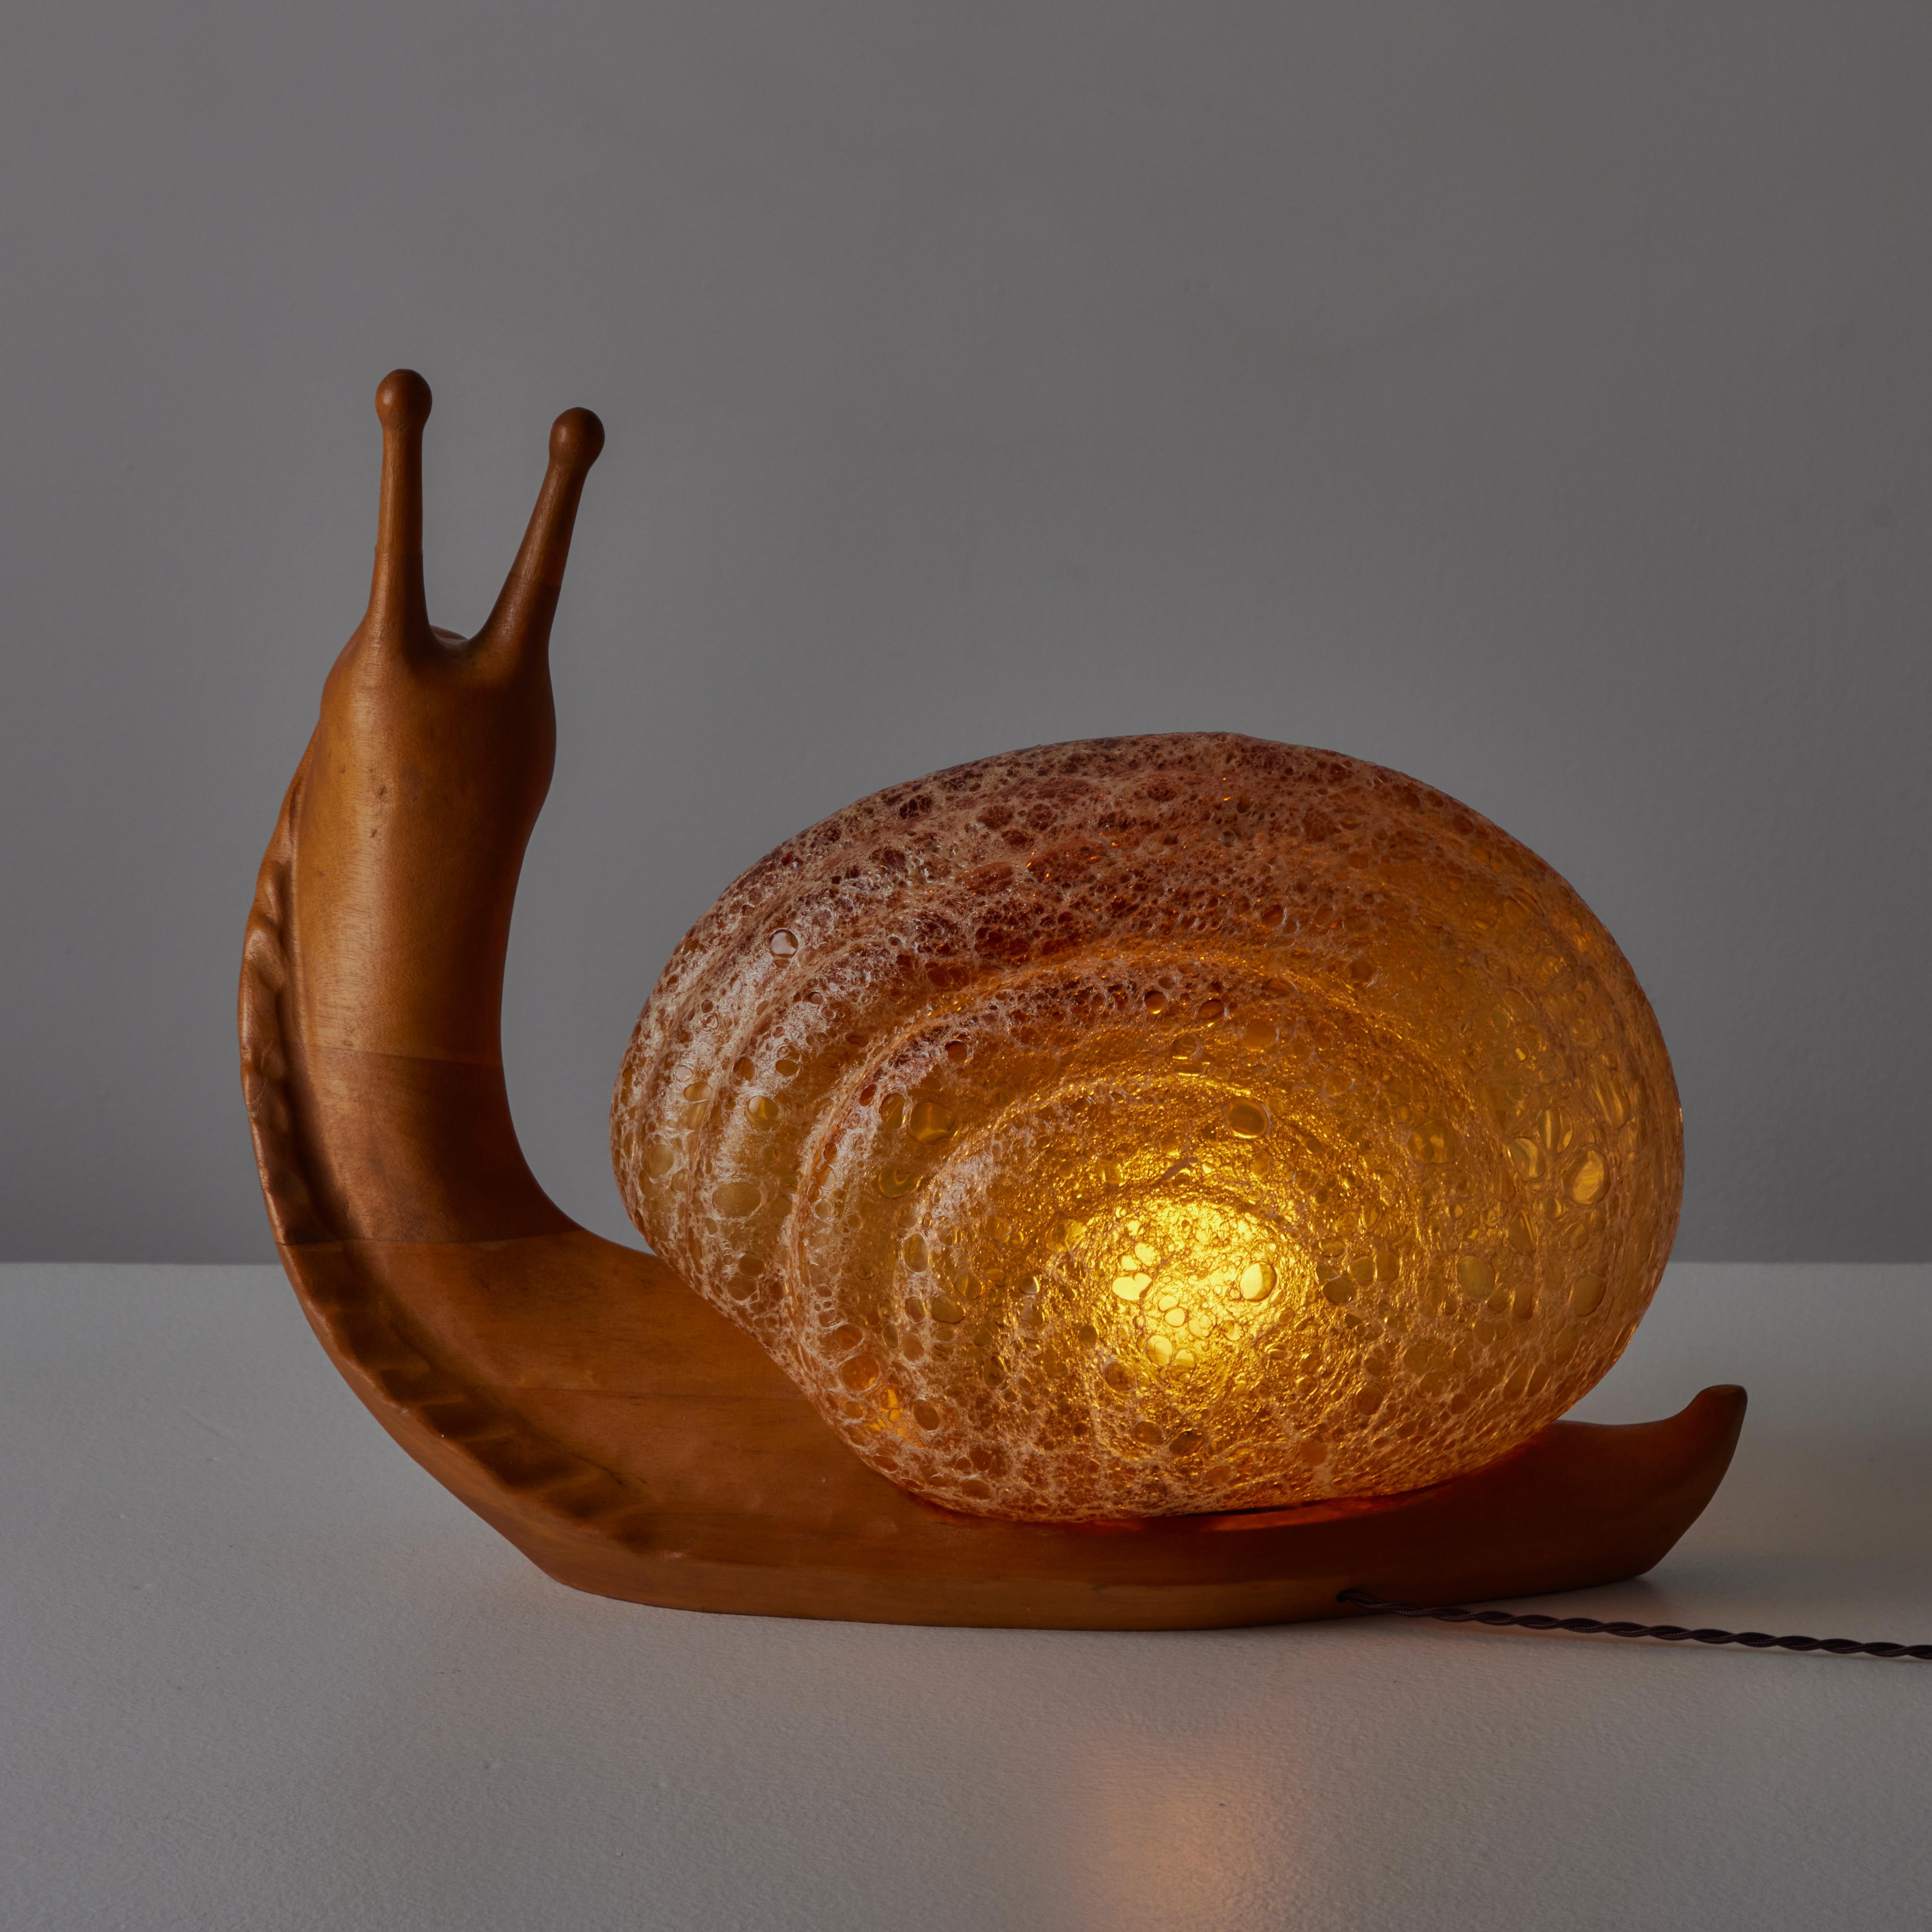 Lampe à poser Snail de Marzio Cecchi pour Dimensione Fuoco. Conçus et fabriqués en Italie, circa les années 1970. Un corps en bois sculpté associé à un diffuseur en verre texturé. Signature gravée sur la face avant du bois. Contient une seule